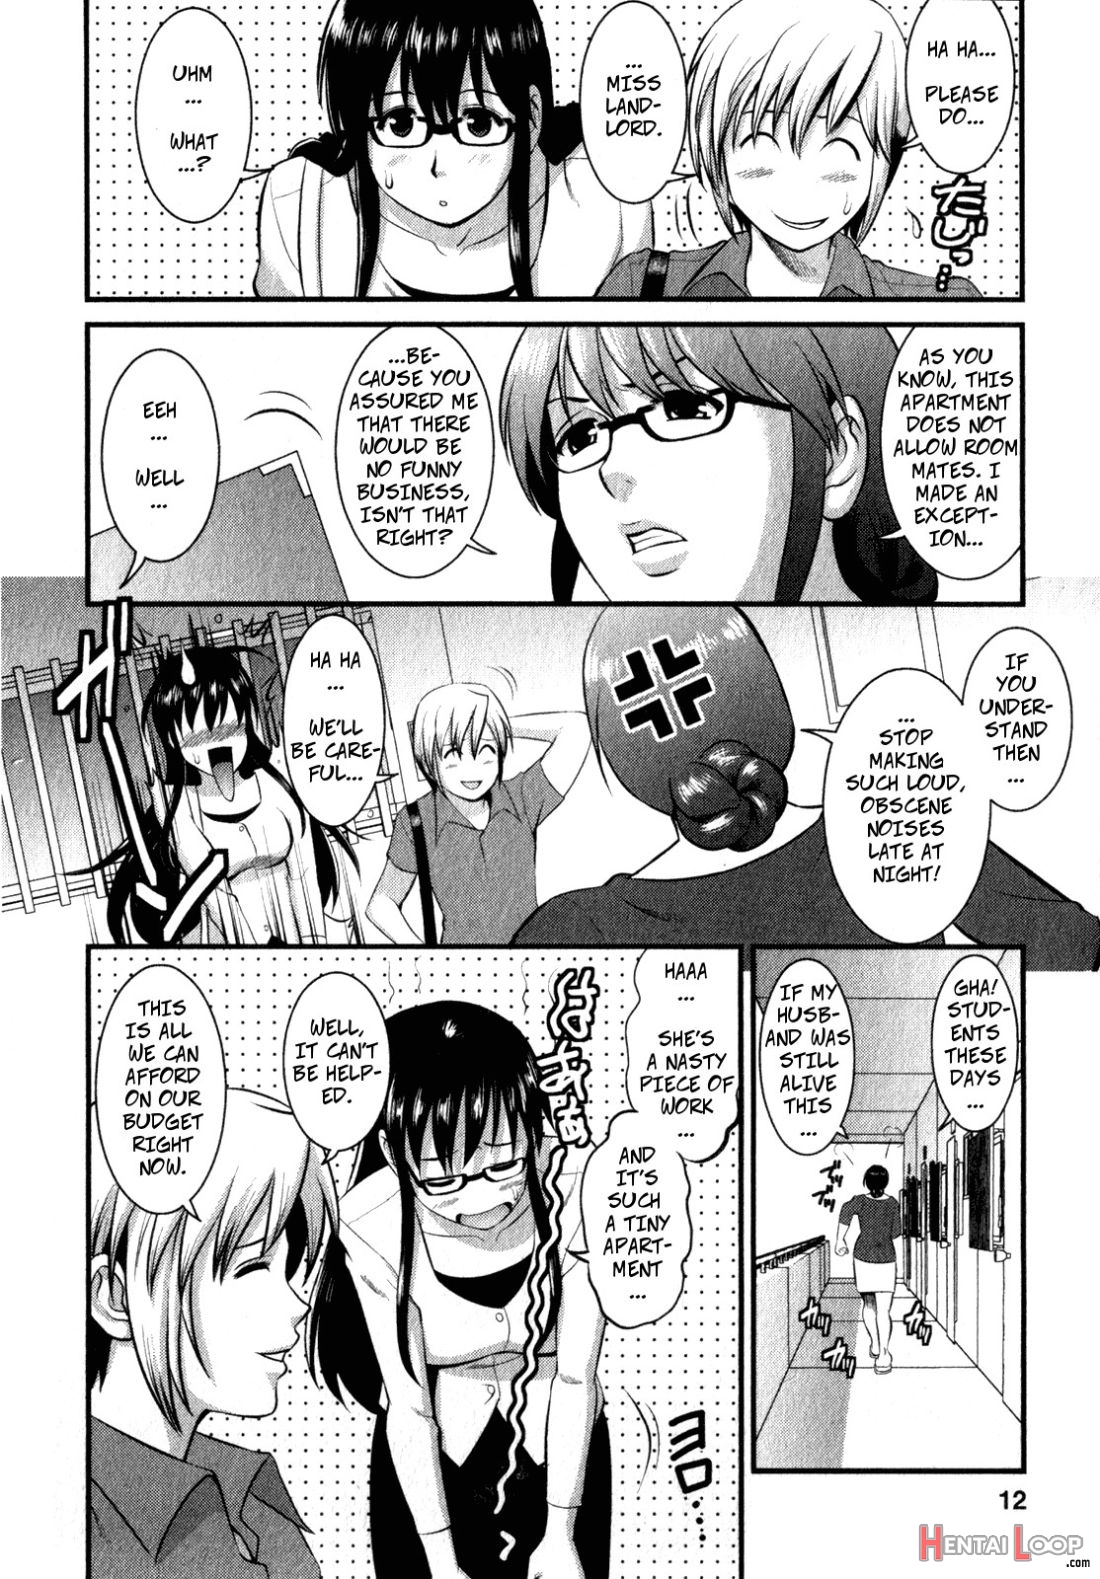 Shizuko-san’s Story page 2